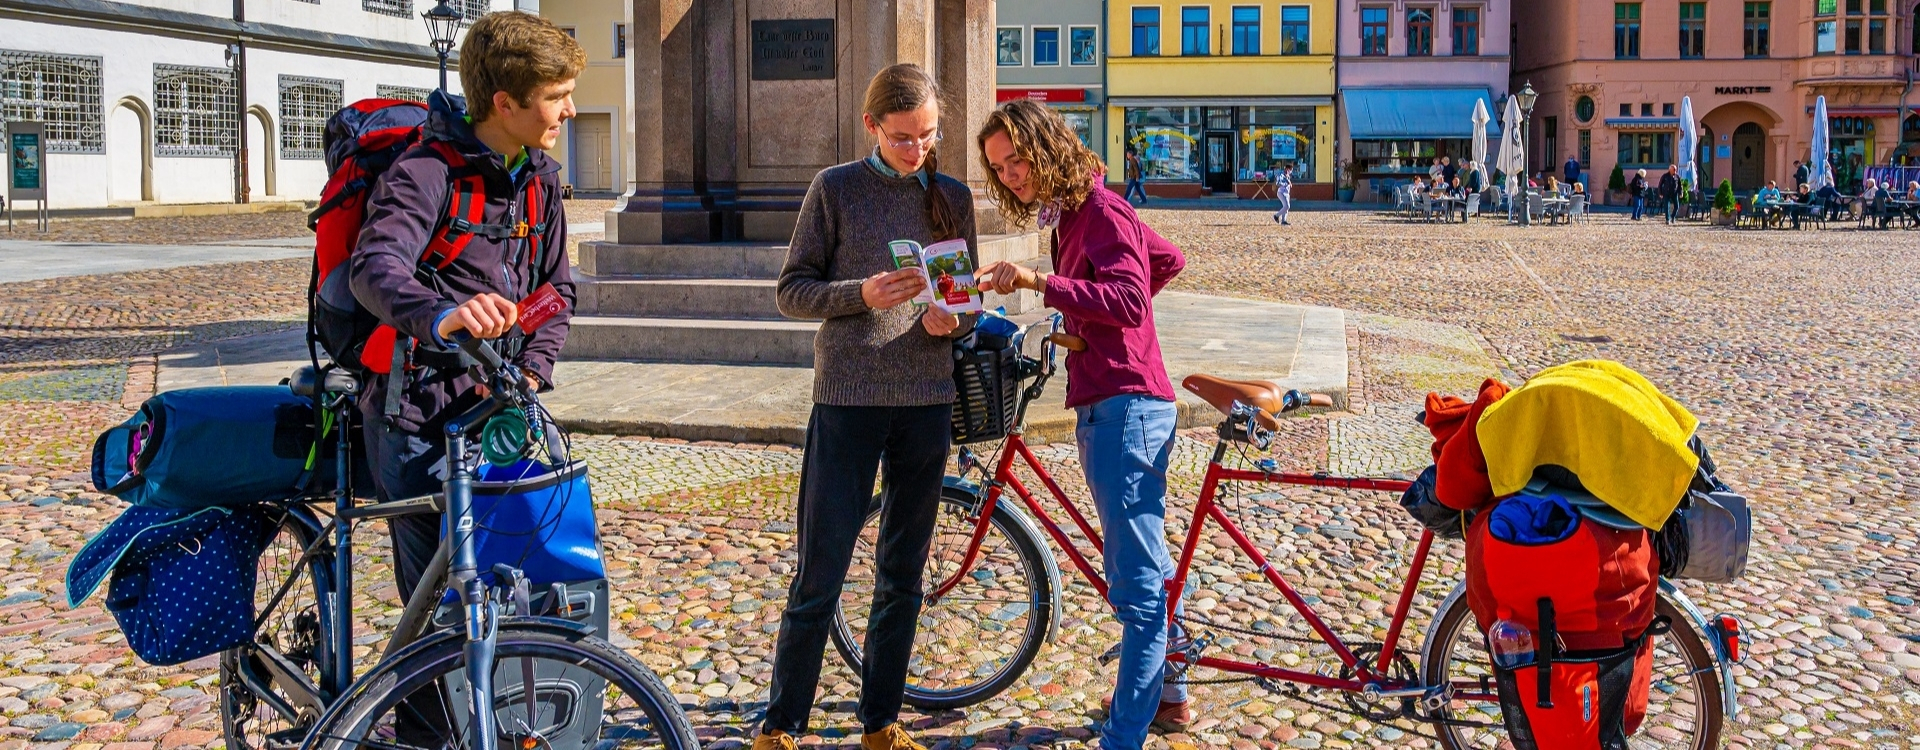 Radfahrer auf dem Marktplatz in Wittenberg